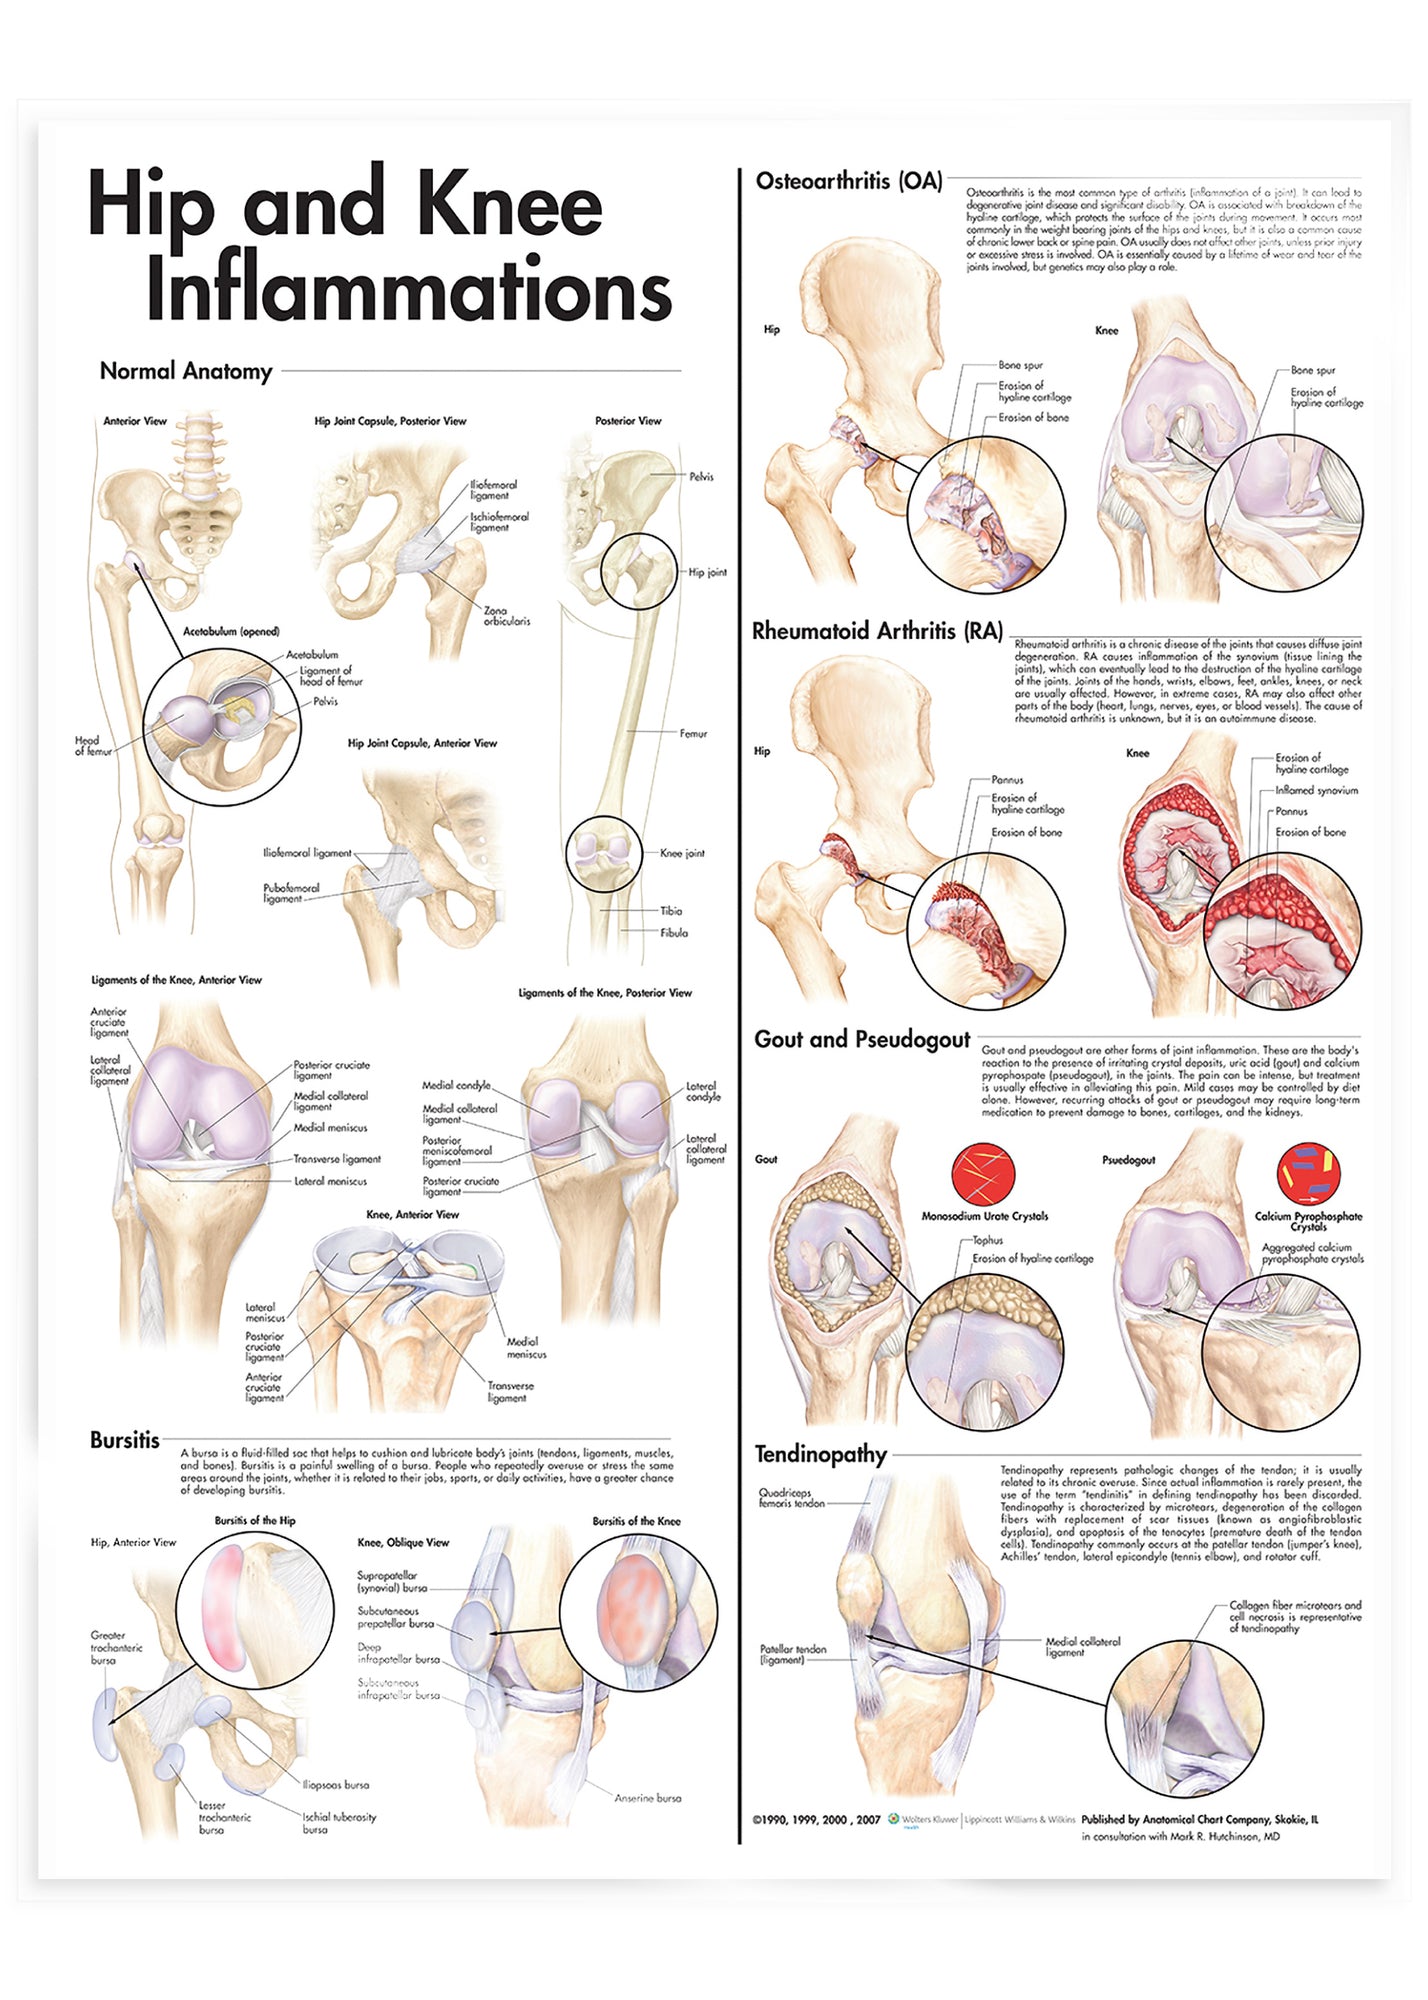 Laminerad affisch om inflammation i höft &amp; knä på engelska 